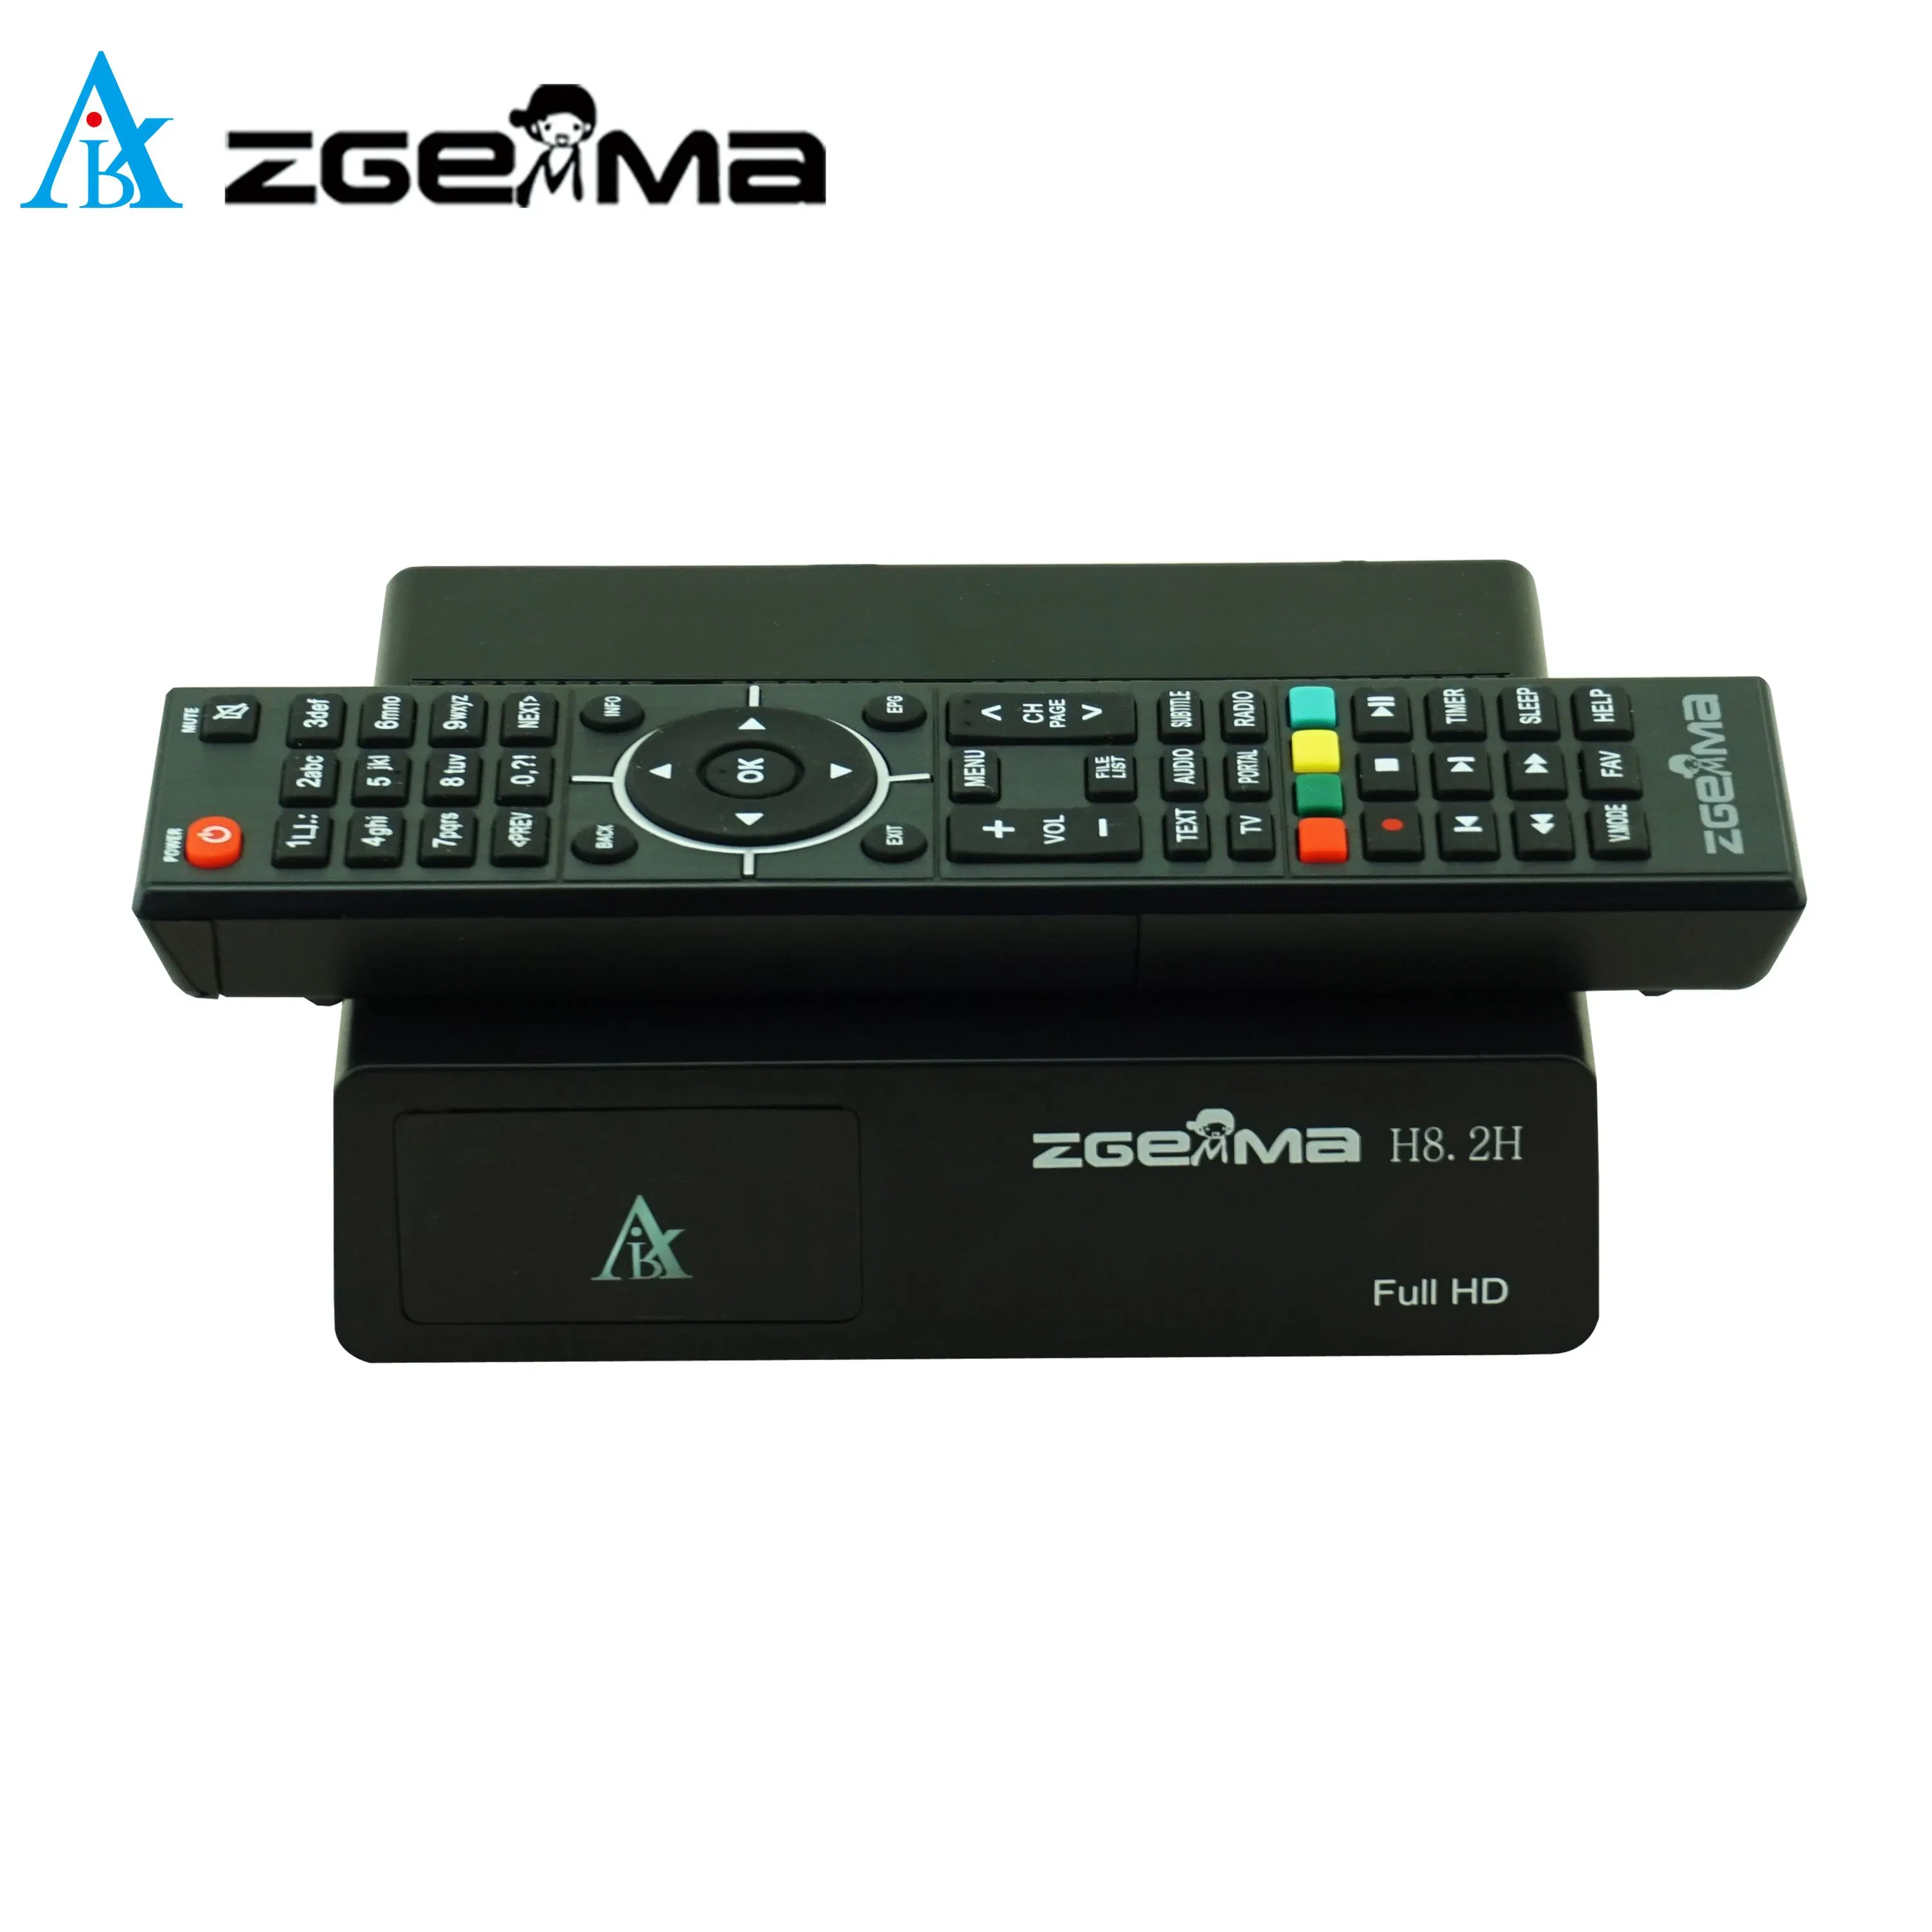 جهاز استقبال تلفزيون متصل بالأقمار الصناعية Zgemma H8.2h - دقة عالية 1080p، جهاز موالفة DVB-S2X مدمج + DVB-T2/C